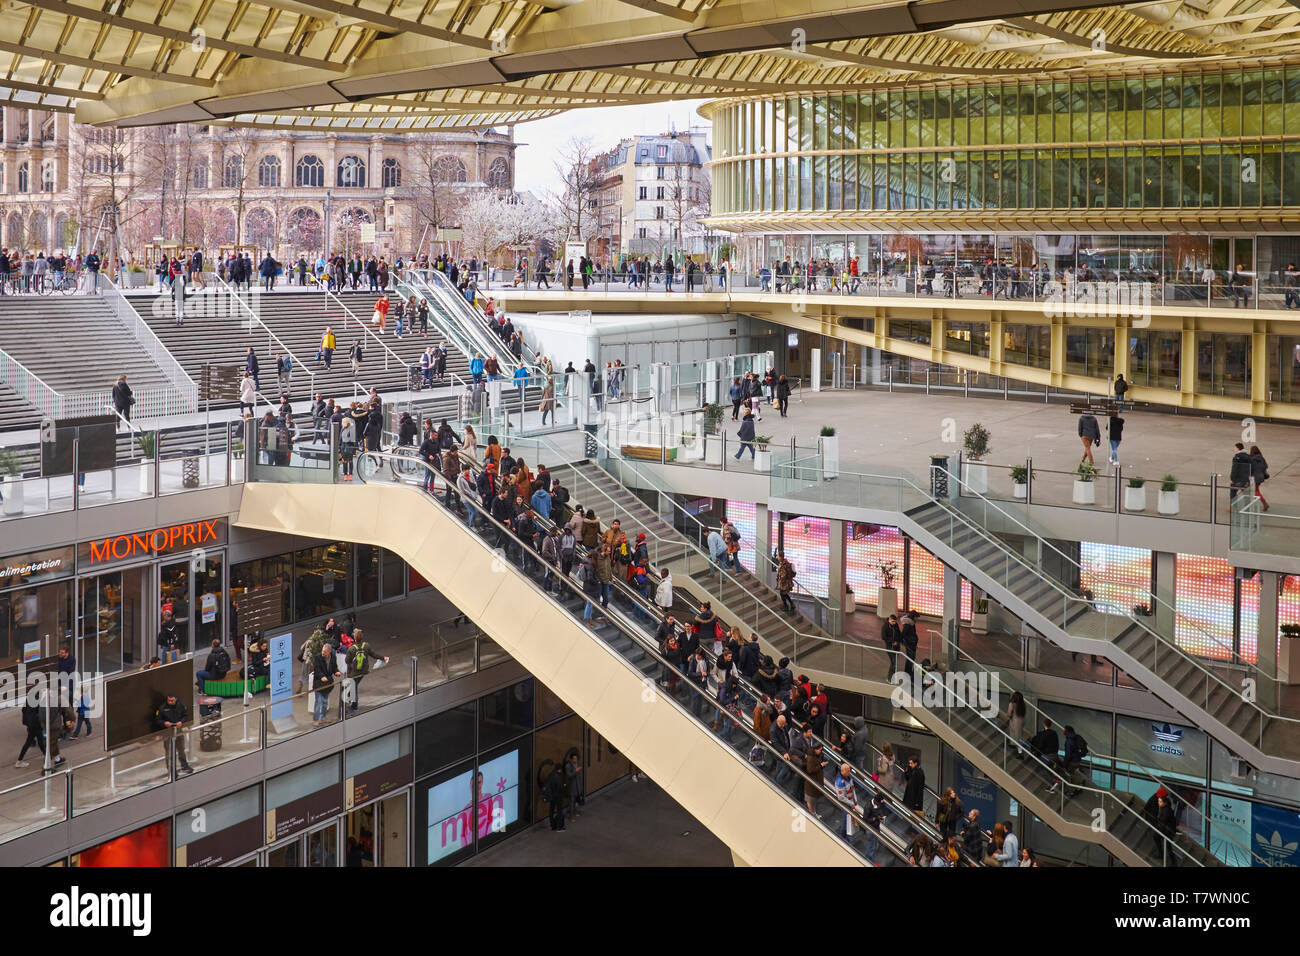 France, Paris, Chatelet Les Halles, Forum des Halles shopping center  Entrance and Canopy Stock Photo - Alamy